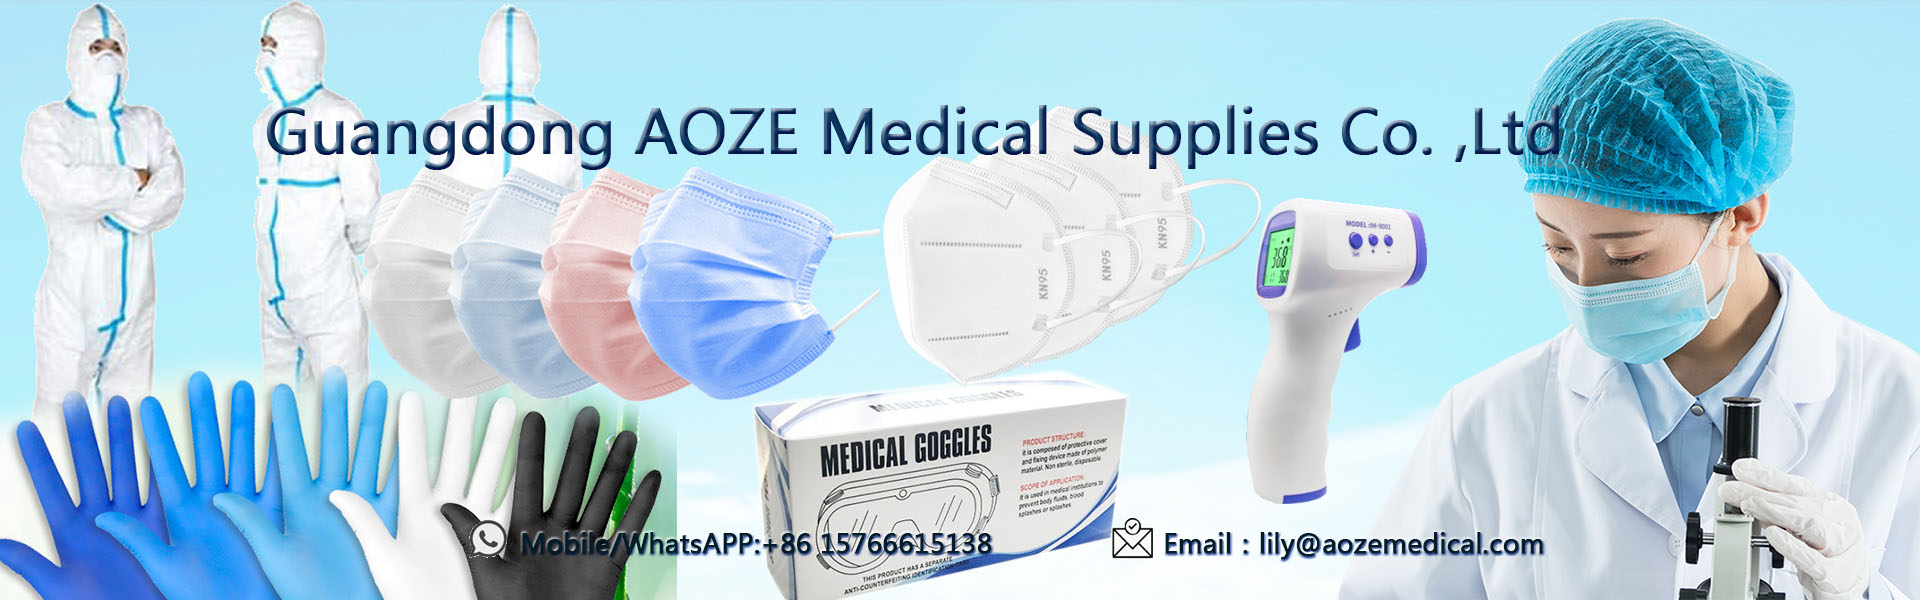 หน้ากากทิ้ง 3 ชั้น, หน้ากากใบหน้า kn95, หน้ากากผ่าตัด,Guangdong AOZE Medical Supplies Co.,Ltd